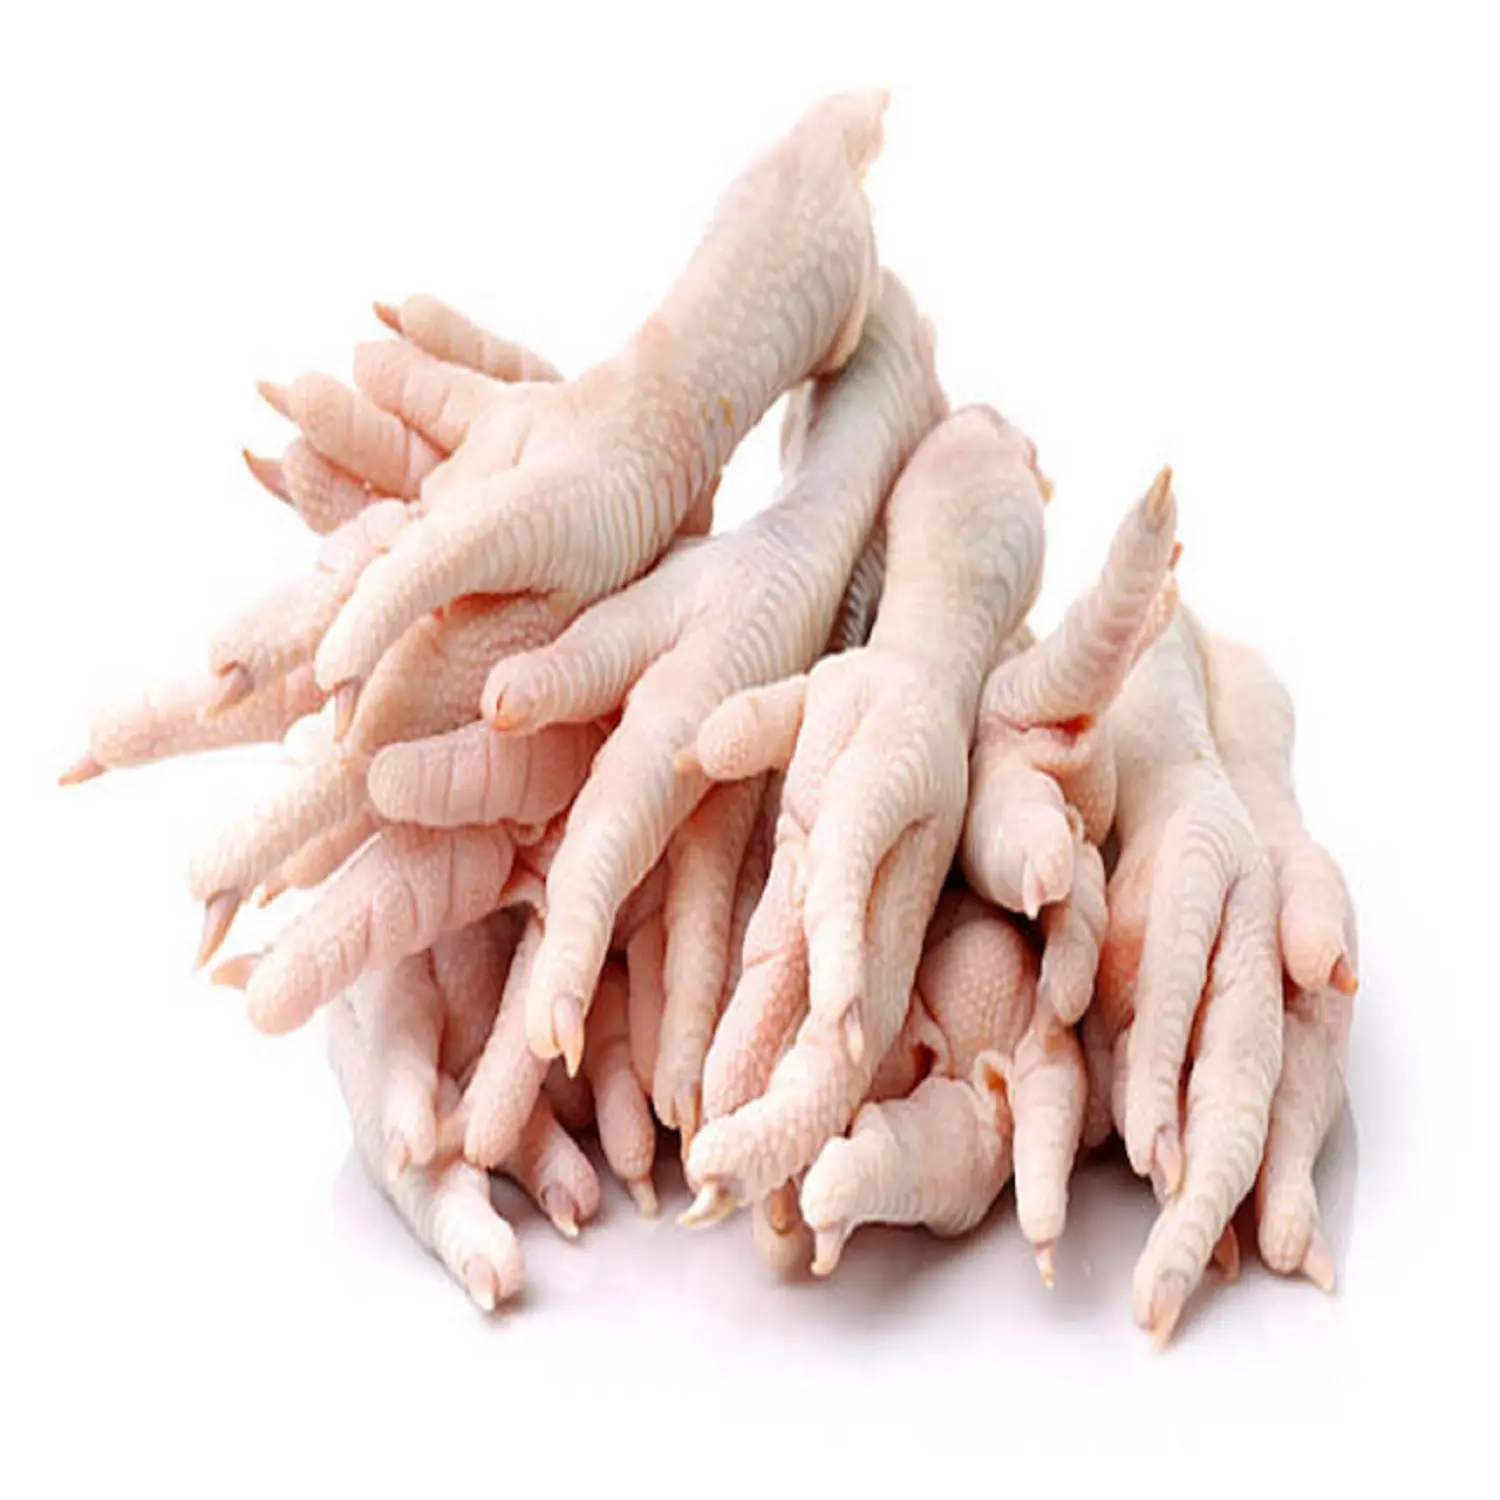 Cheap Price Halall Frozen Chicken Feet/Chicken Paws/ Chicken Leg Quarter